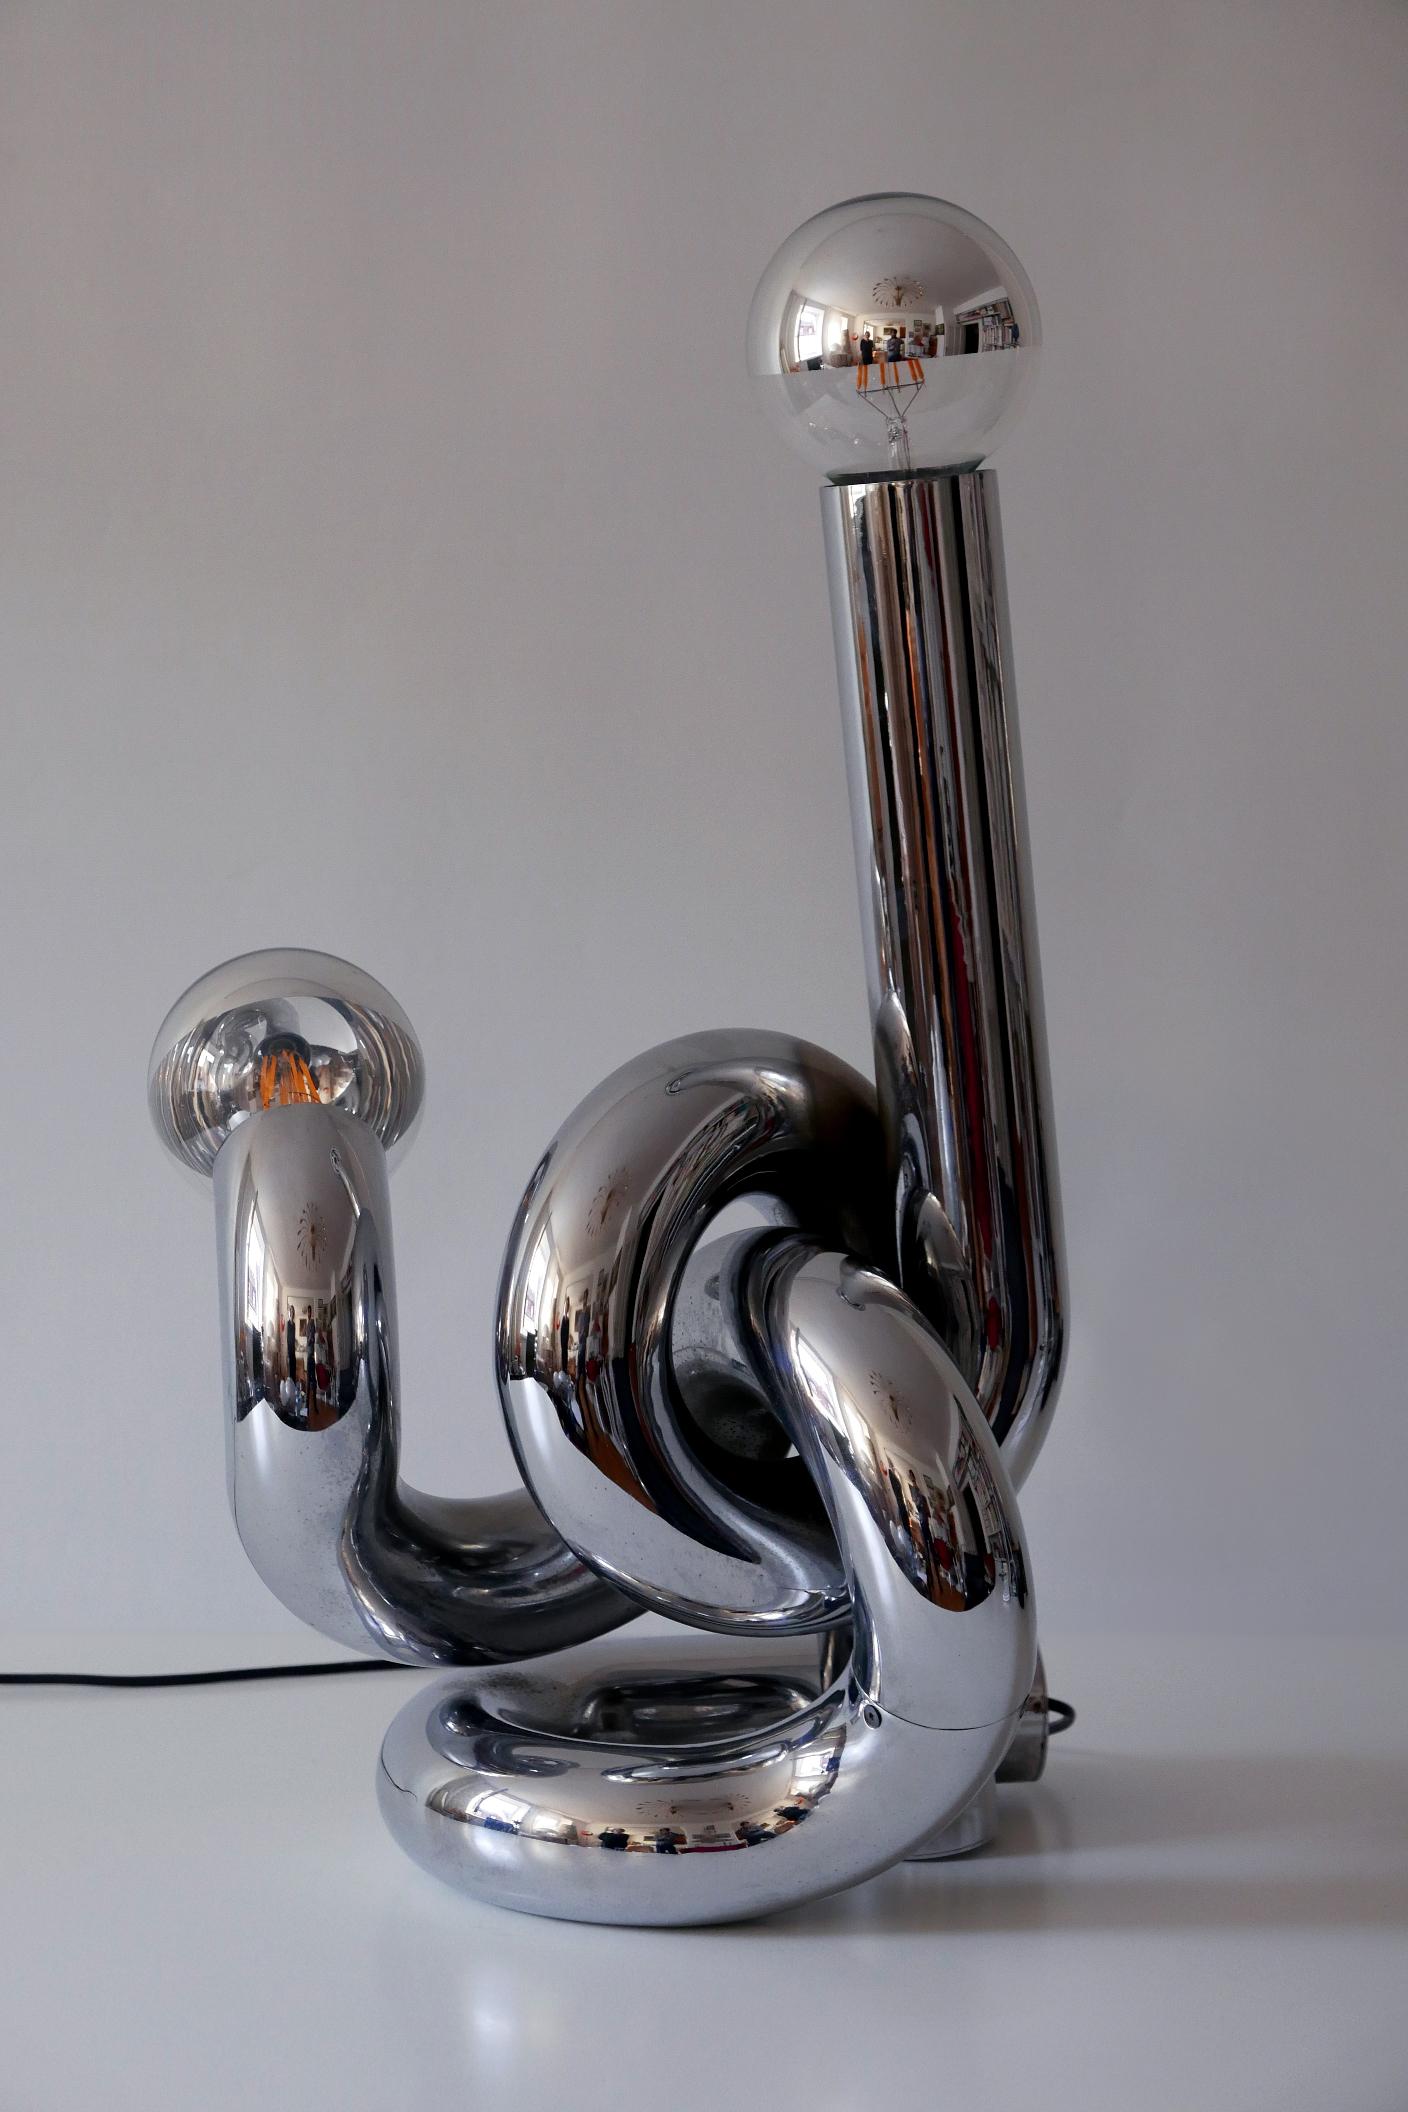 Wunderschöne Mid-Century Modern Lichtskulptur / Tisch- oder Stehleuchte 'Bruco'. Entworfen von Giovanni Banci, Florenz, Italien, 1960er Jahre.

Die aus massivem verchromtem Stahl gefertigte Leuchte wird mit 2 x E27 / E26 Edison-Schraubfassungen